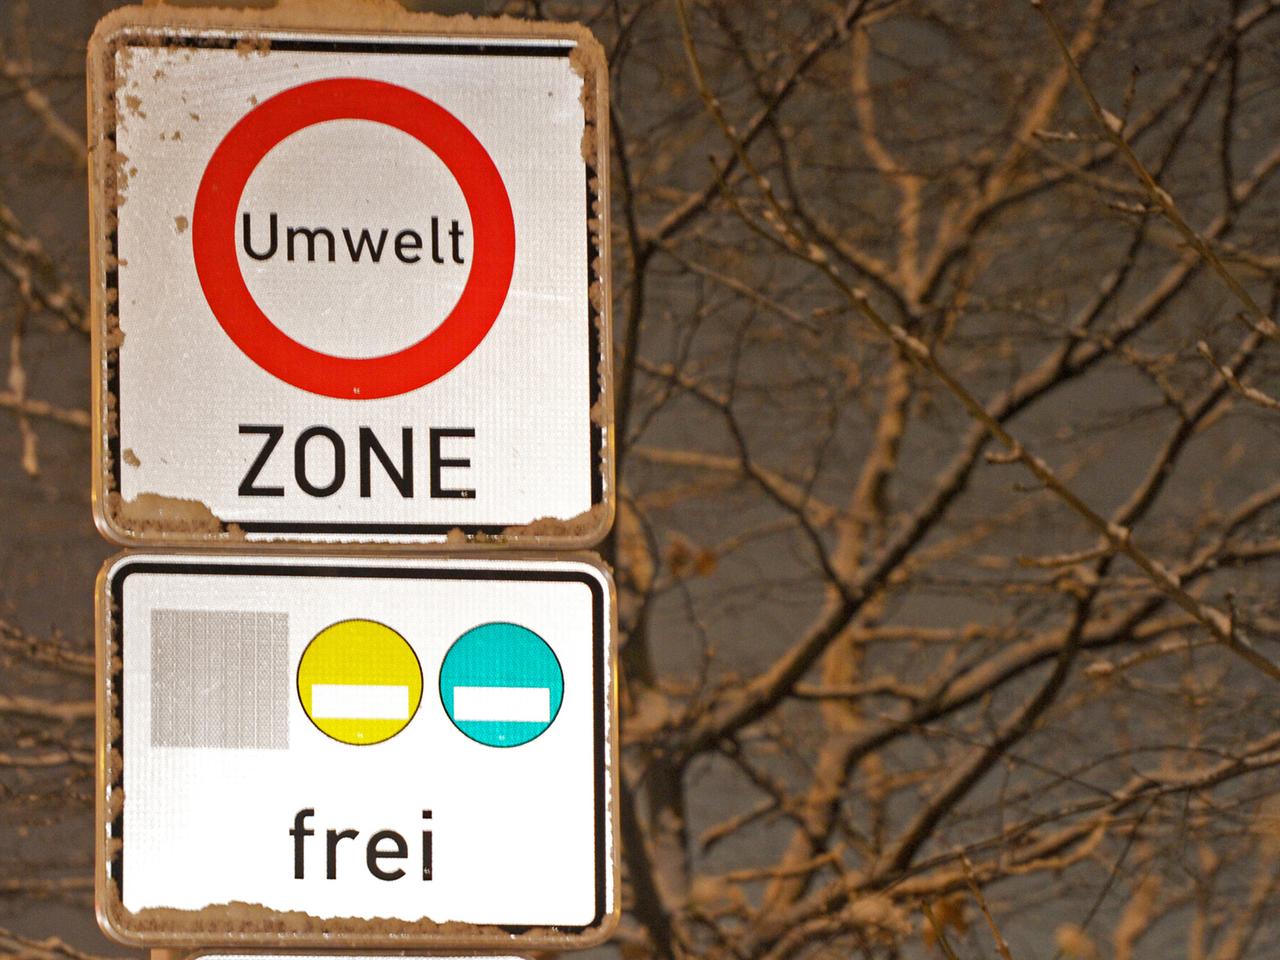 Zwei Verkehrsschilder übereinander: das obere weist auf eine Umweltzone hin, das untere erlaubt nur Fahrzeuge mit gelben und grünen Umweltplaketten.